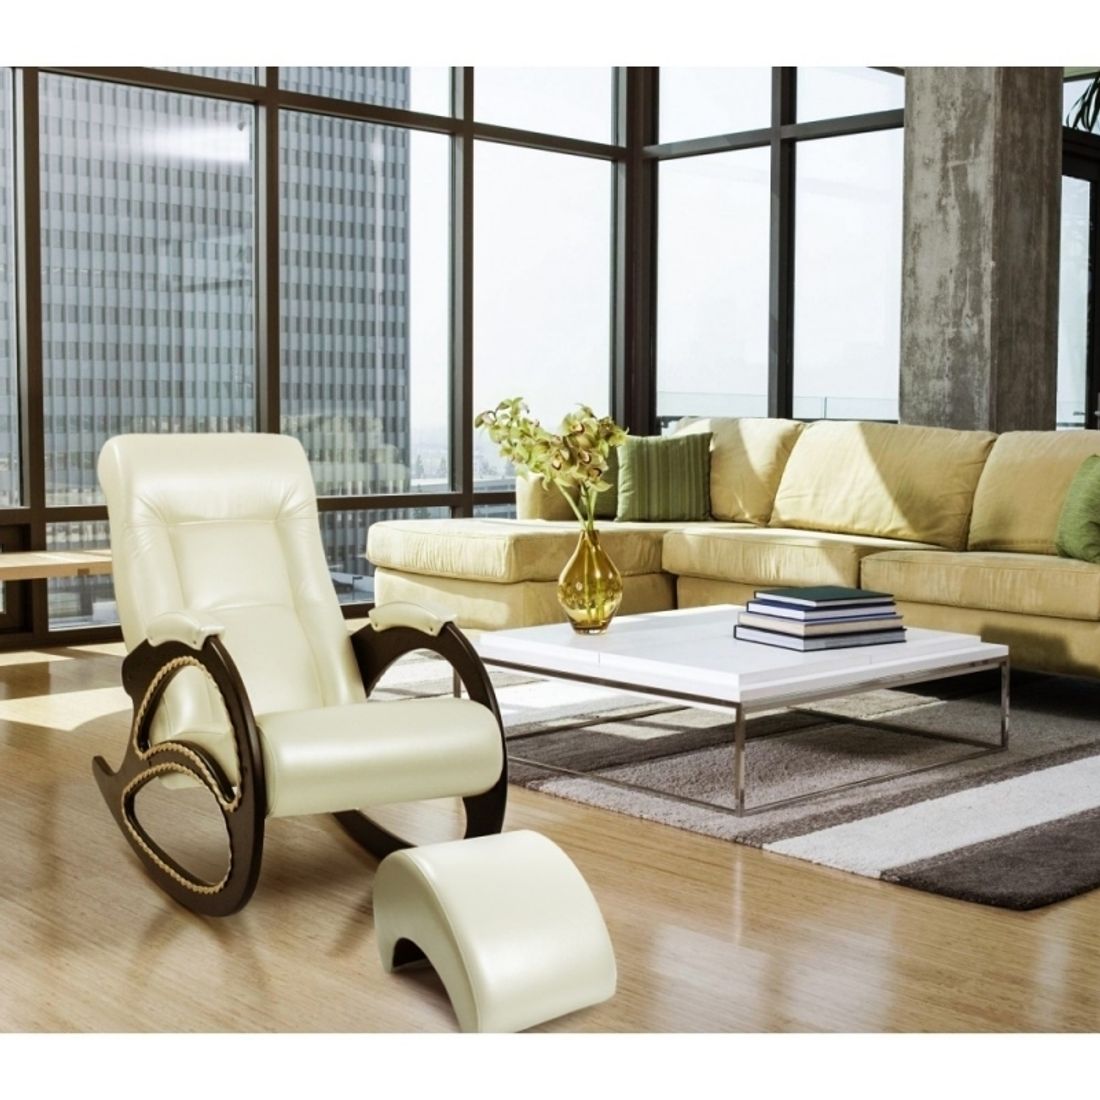 Импекс мебель сайт. Пуф комфорт модель 42. Кресло качалка в интерьере. Красивое кресло для гостиной. Кресло качалка с пуфиком для ног.